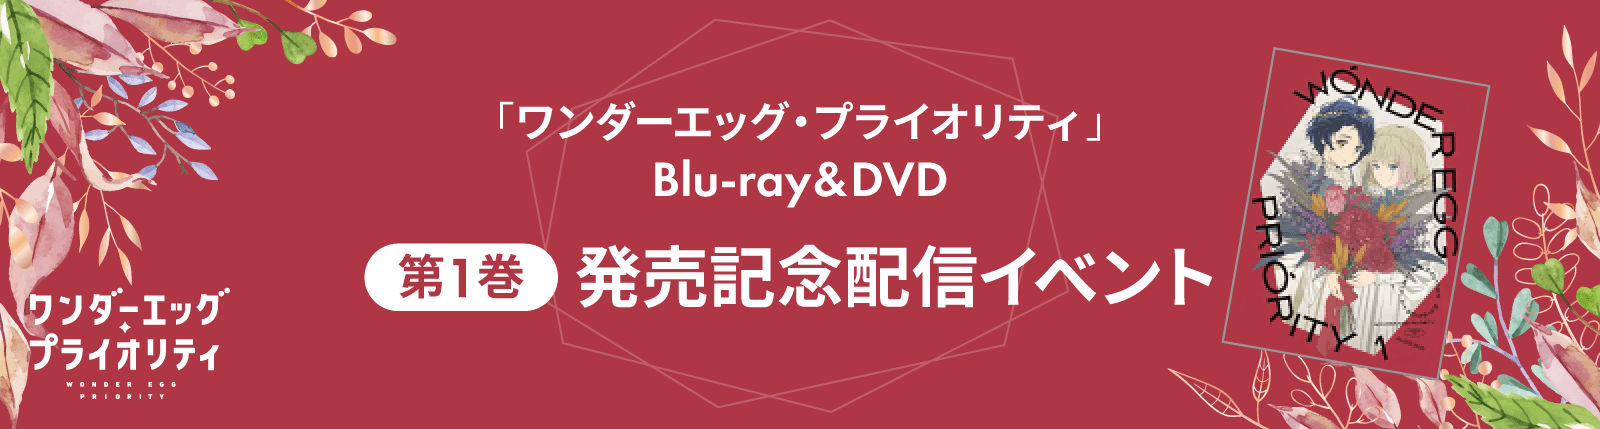 「ワンダーエッグ・プライオリティ」 Blu-ray&DBD 第1巻発売記念配信イベント